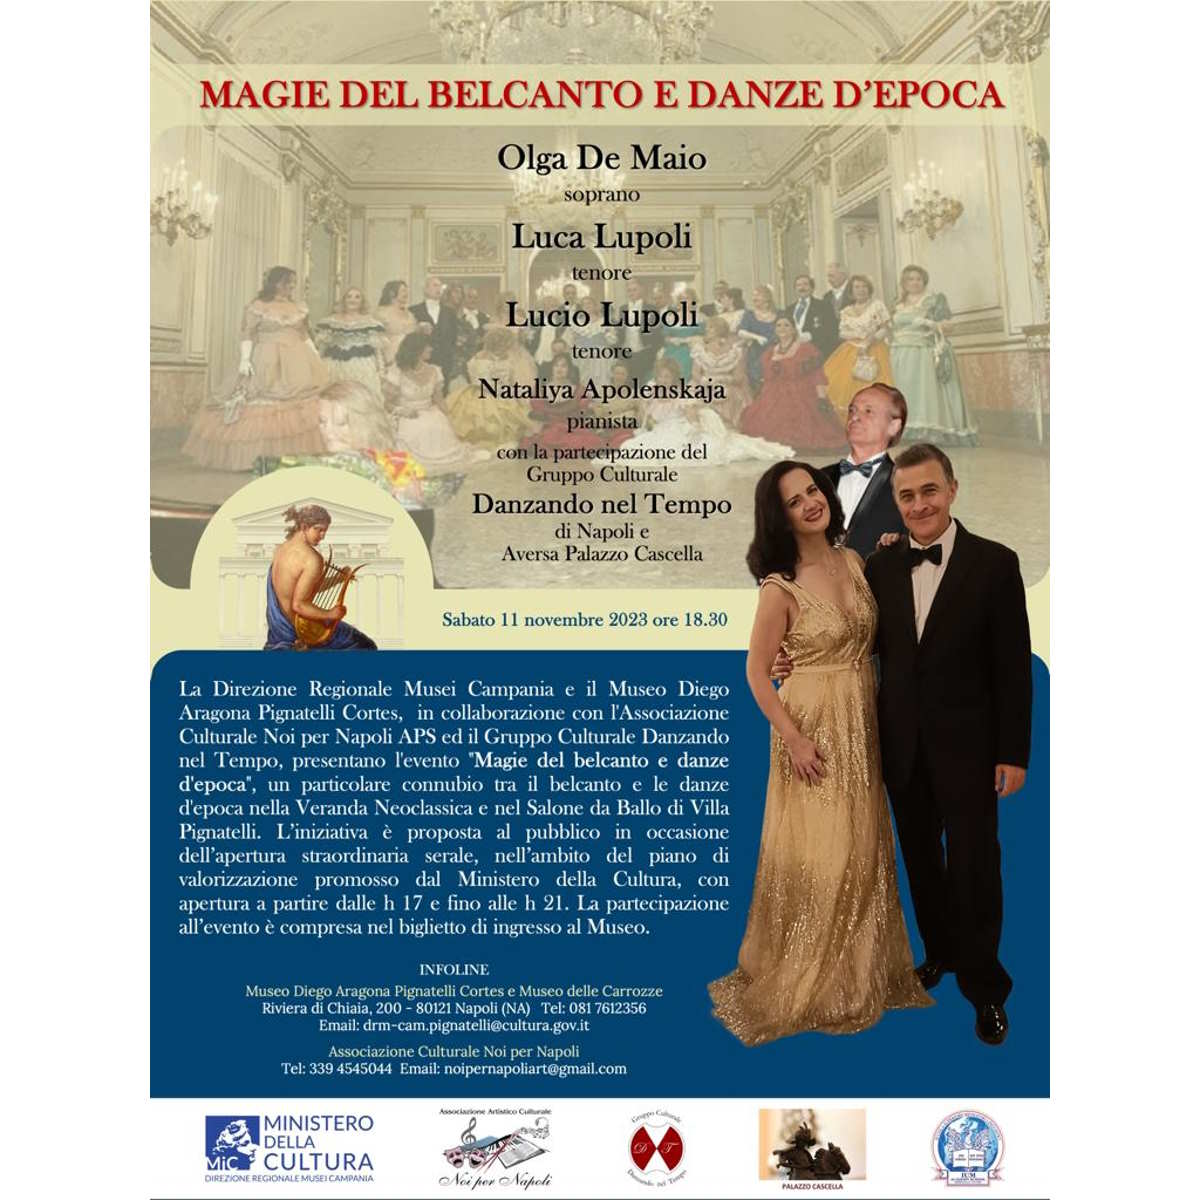 Magie del Belcanto e Danze d'Epoca al Museo Diego Aragona Pignatelli Cortes per l'apertura serale straordinaria